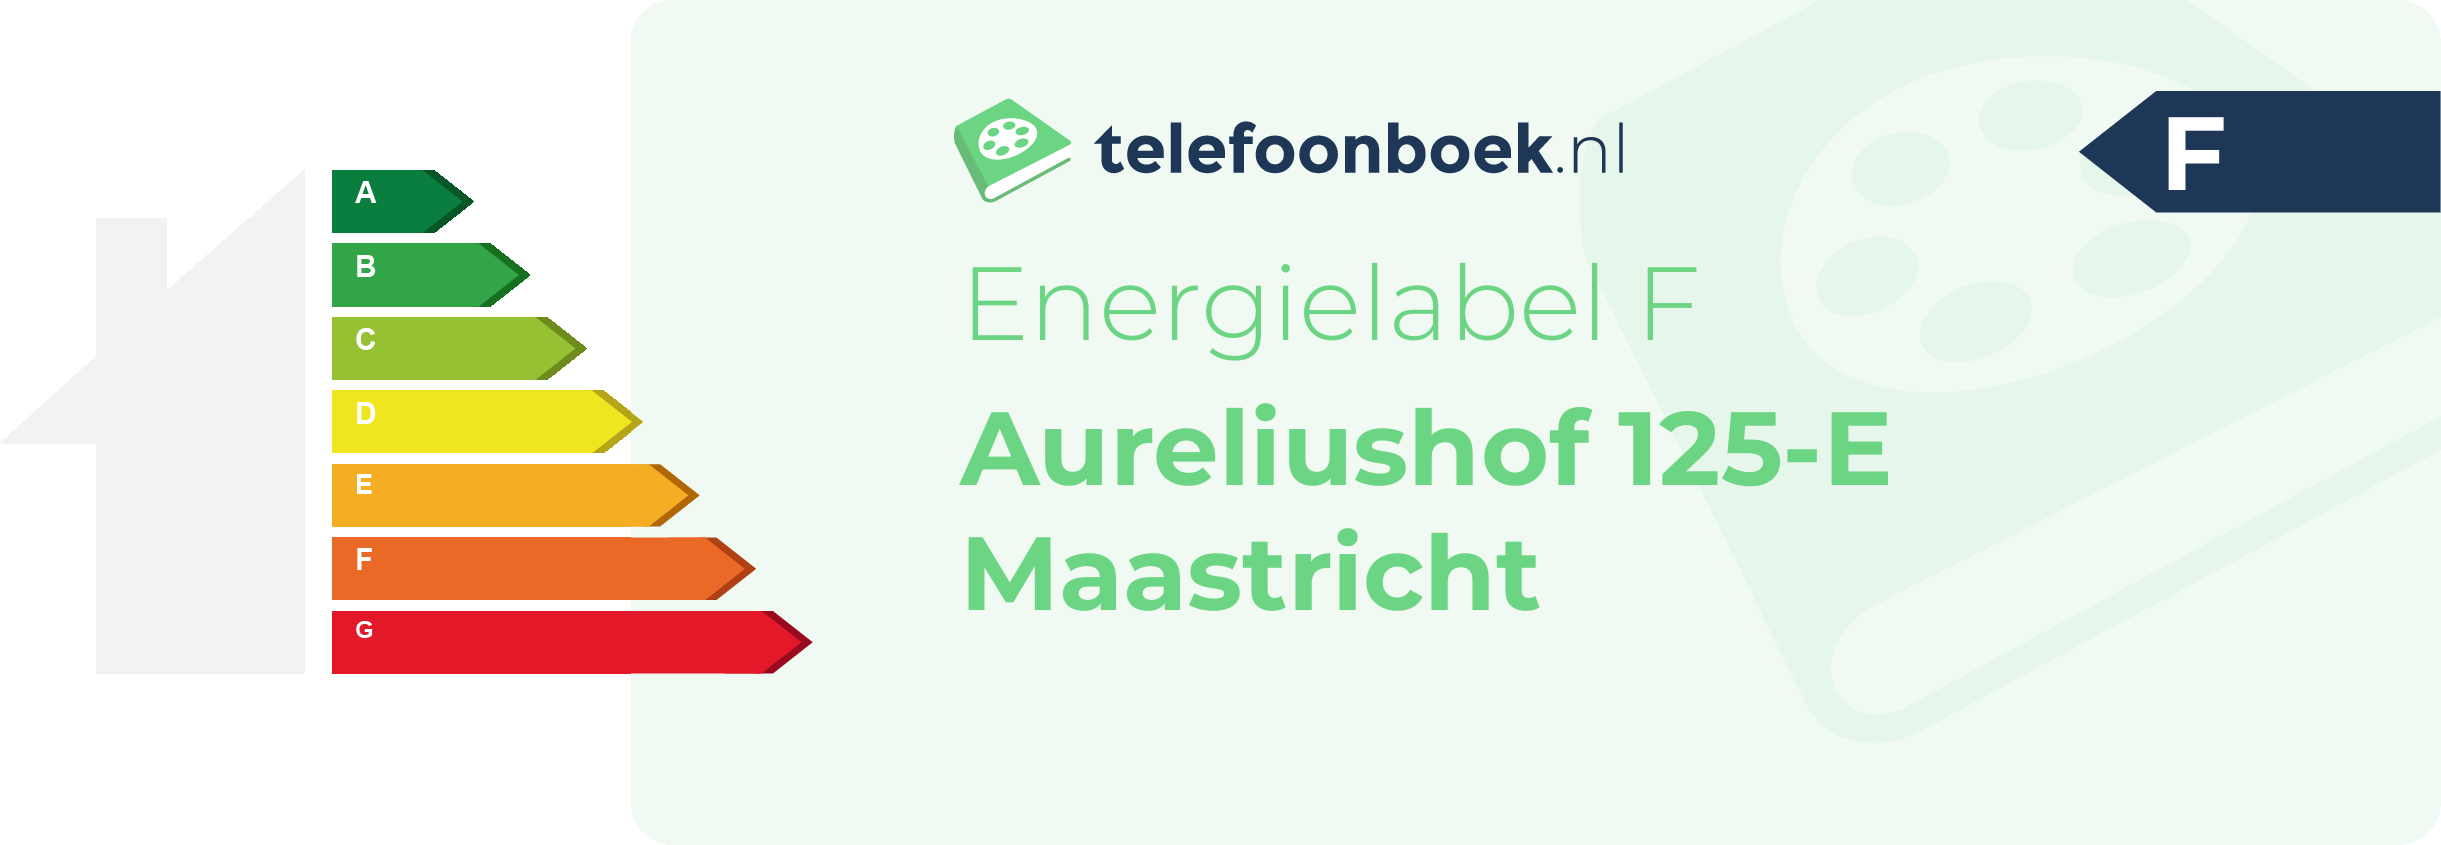 Energielabel Aureliushof 125-E Maastricht